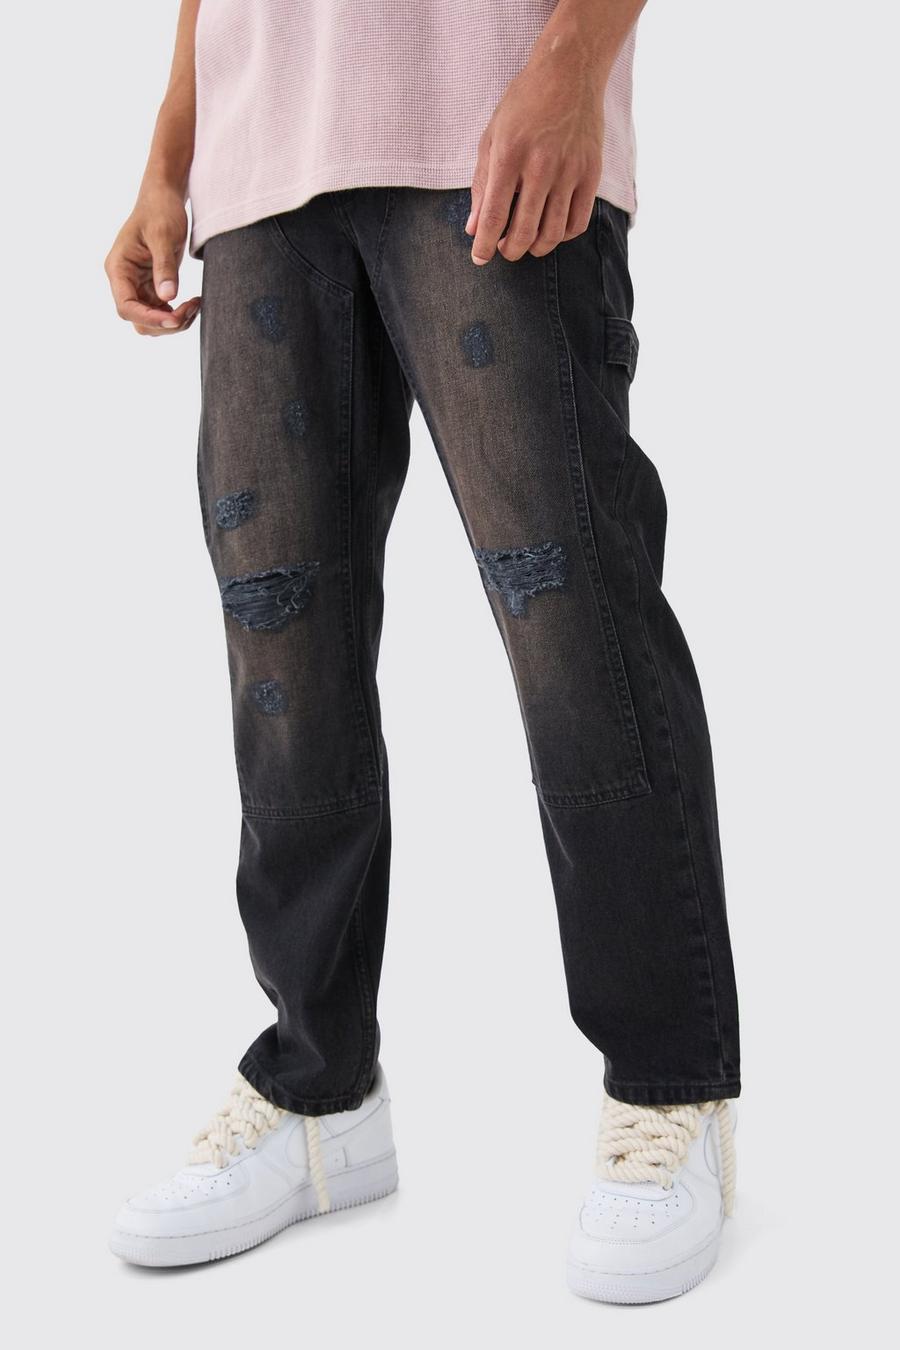 Lockere Jeans in gewaschenem Schwarz mit Riss am Knie, Black